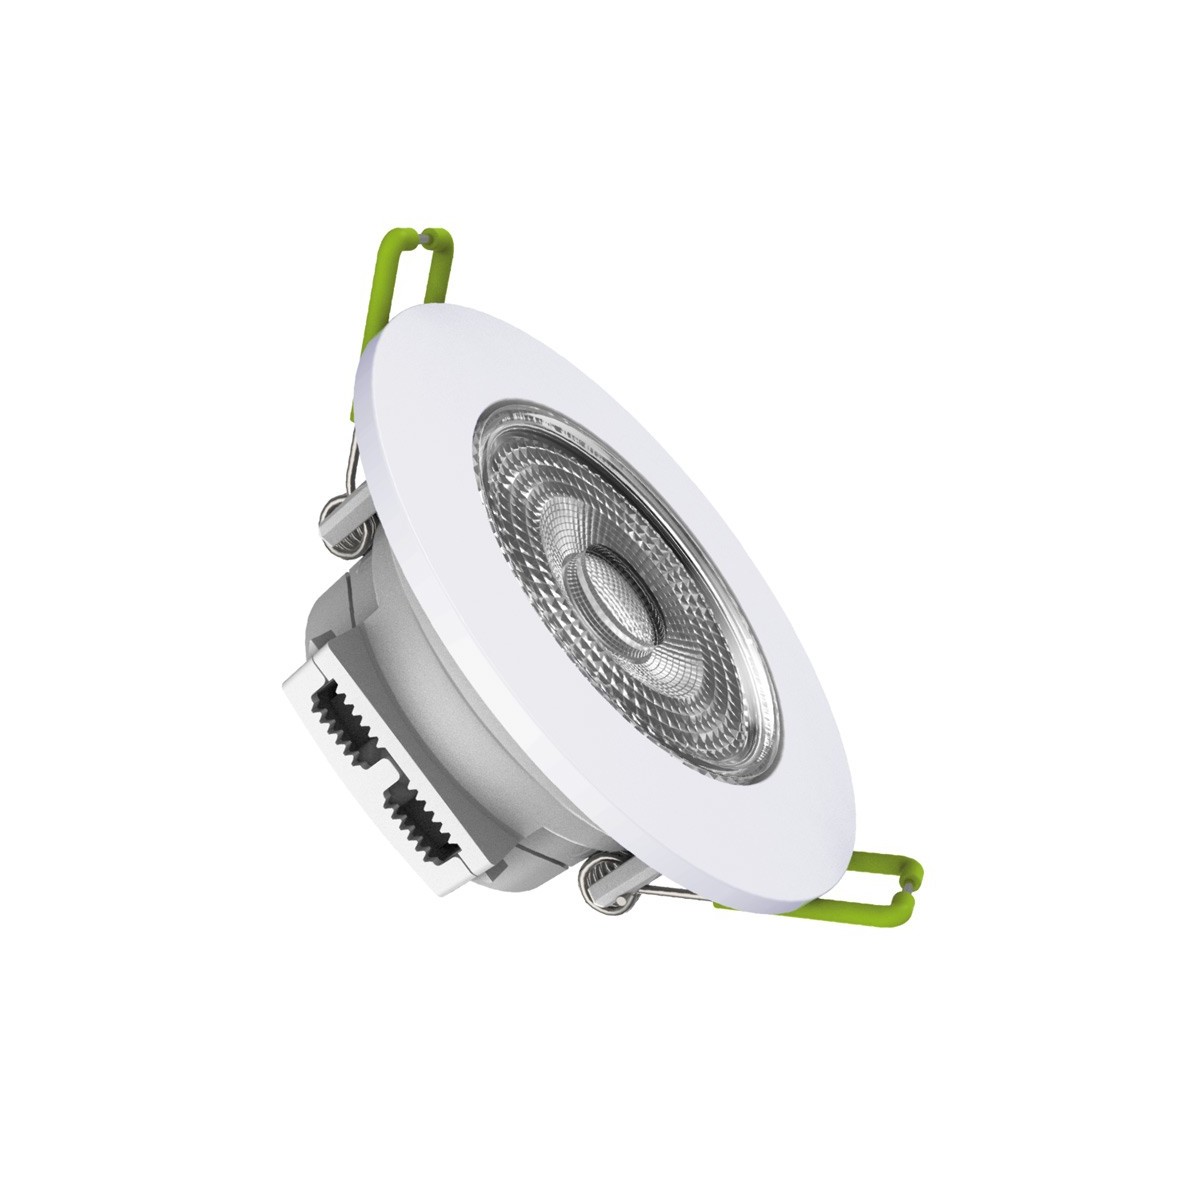 Schwenkbares LED Downlight 6W - Einbauöffnung Ø 70mm - LED Einbauleuchte